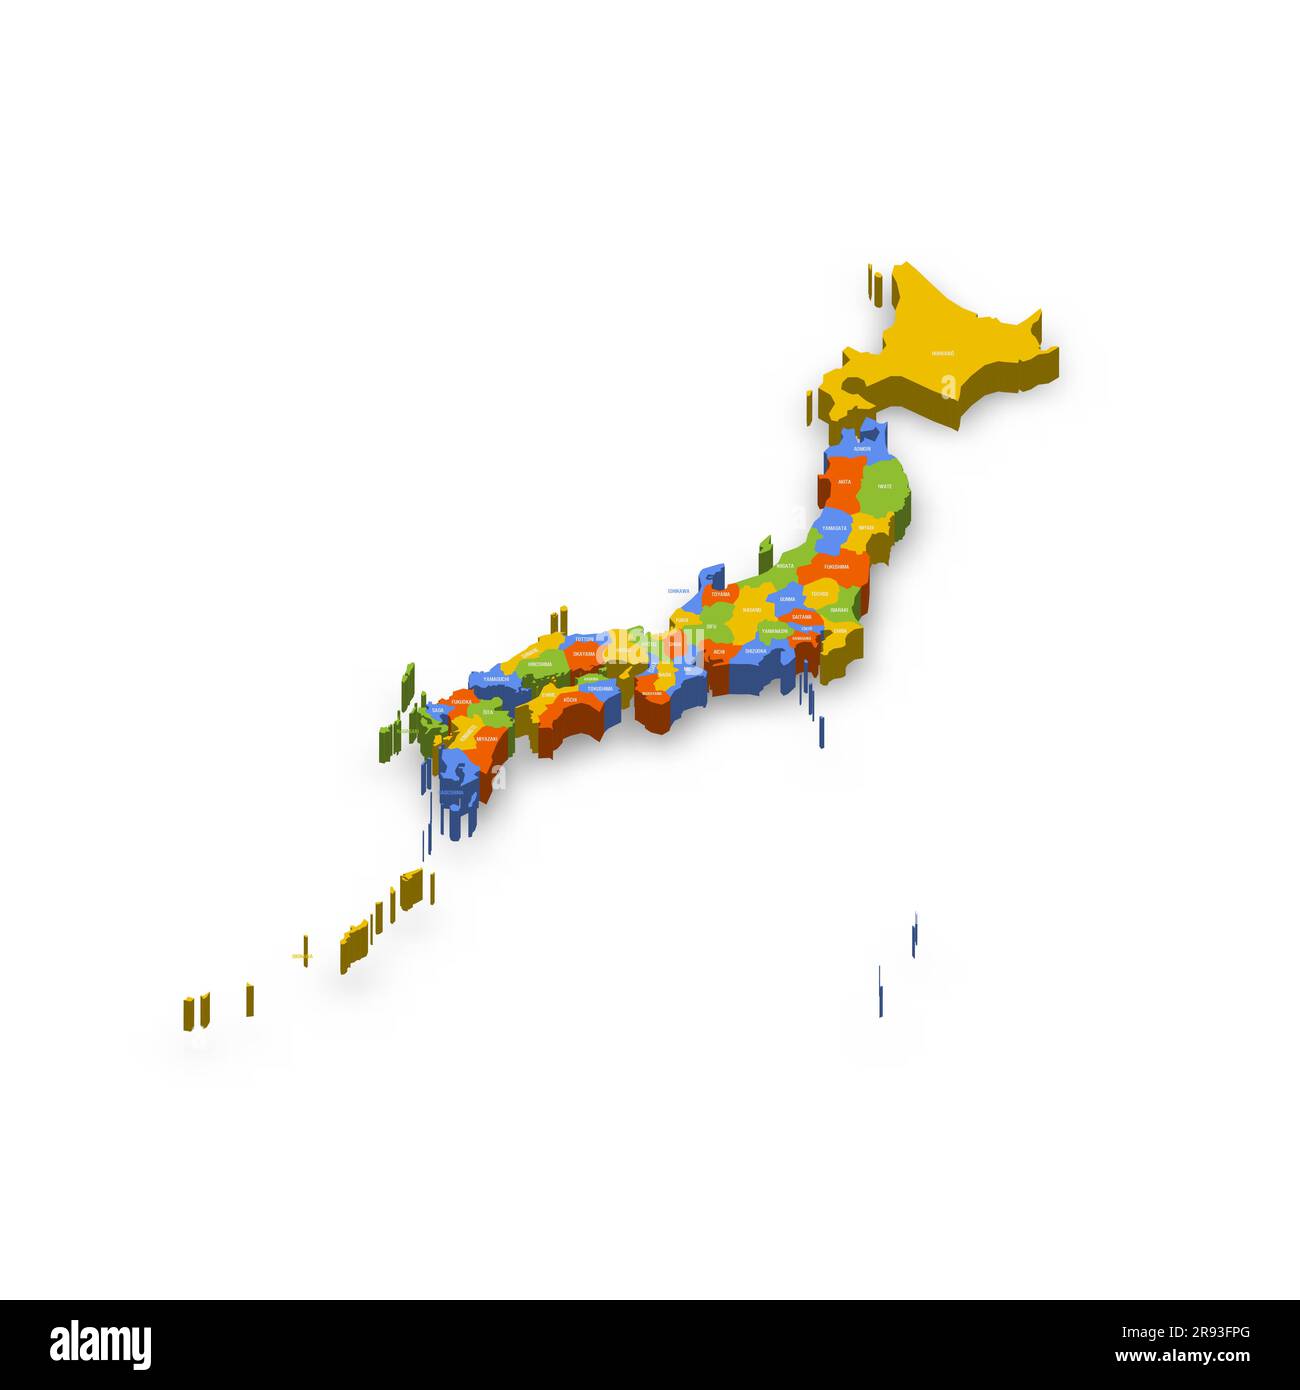 Politische Karte der Verwaltungseinheiten Japans - Präfekturen, Metropilis Tokio, Territorium Hokaido und städtische Präfekturen Kyoto und Osaka. Farbenfrohe 3D-Vektorkarte mit Ländernamen und Schatten. Stock Vektor